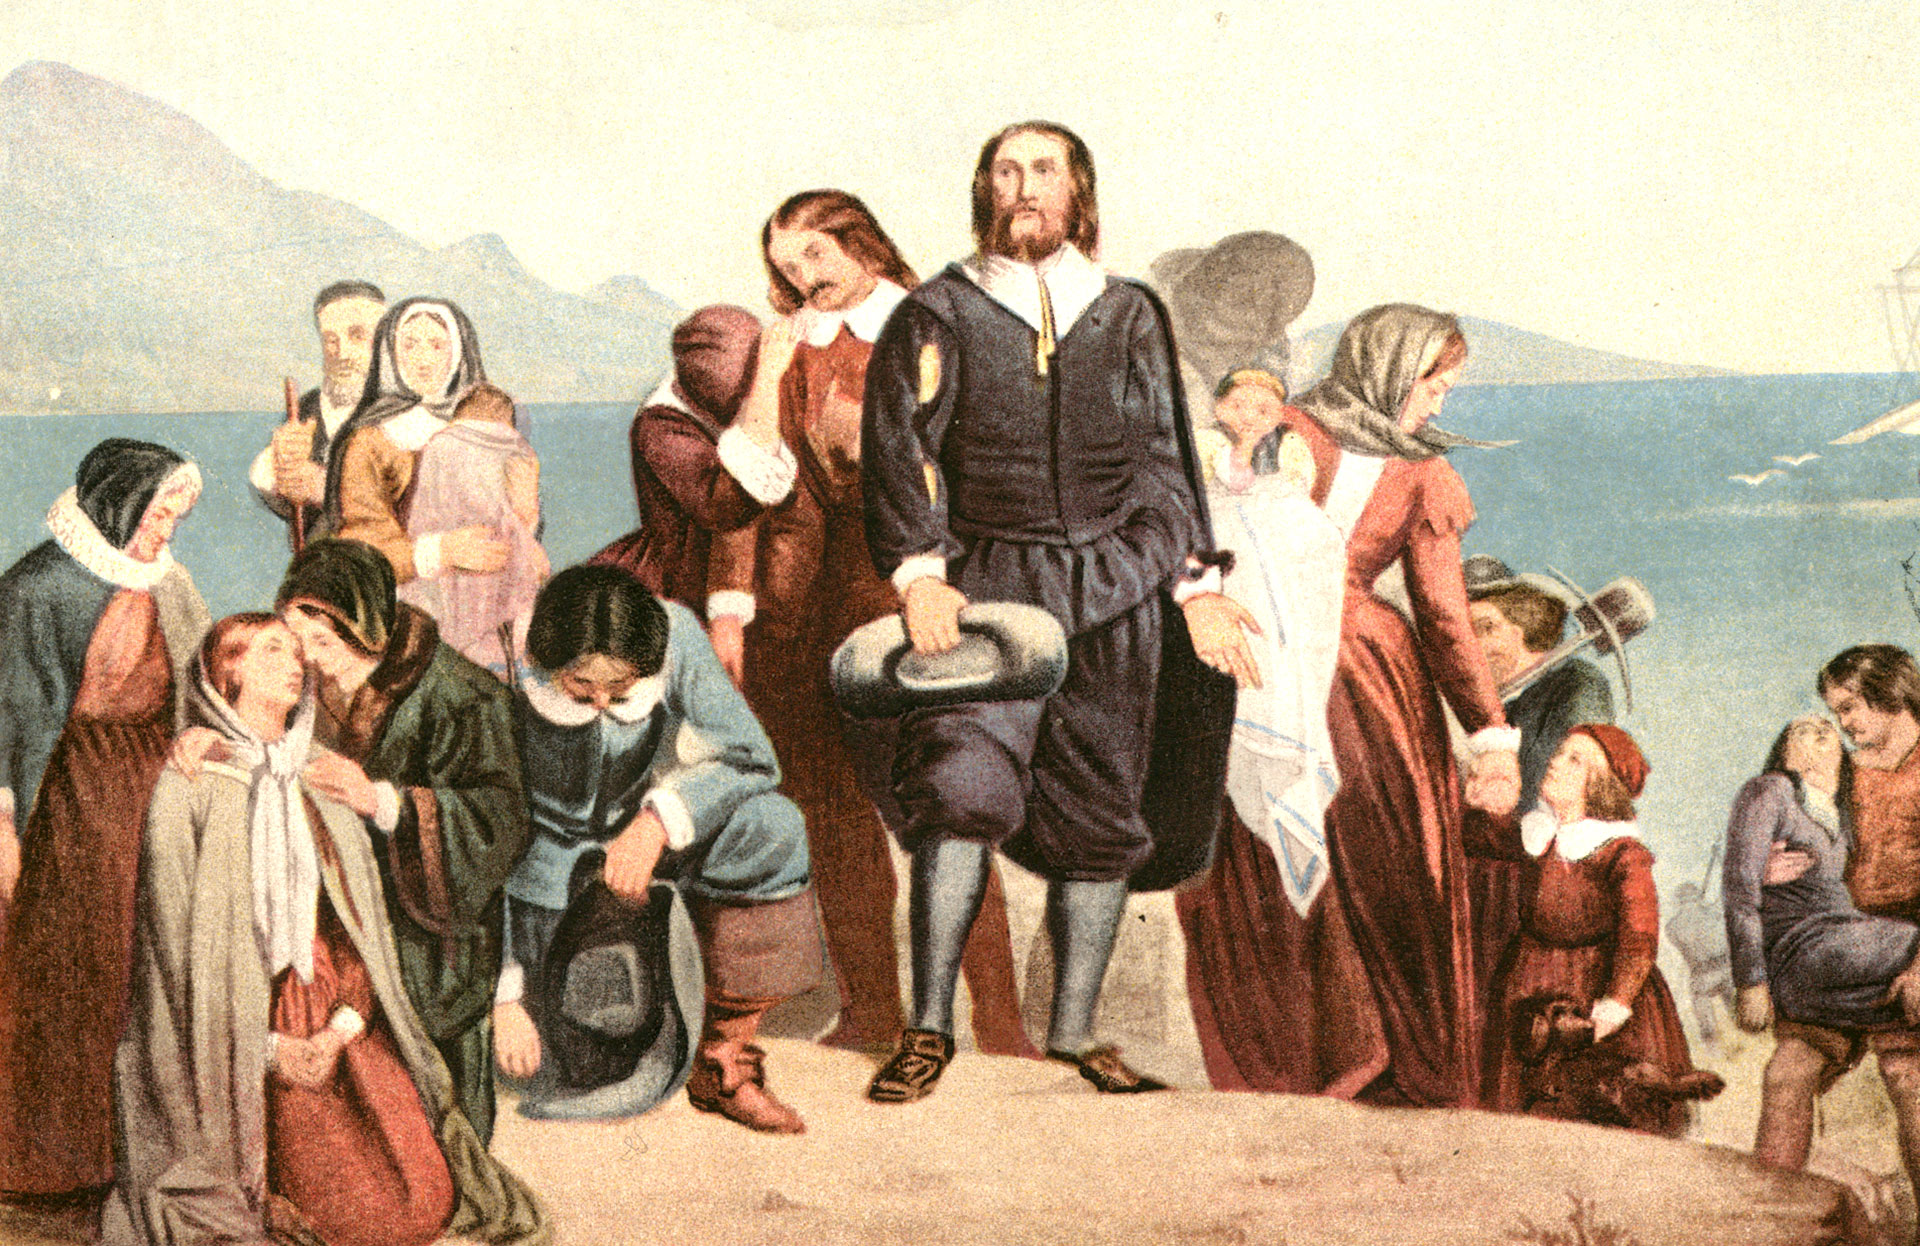 Cuadro de Charles Lucy que reproduce el desembarco de los peregrinos en América (Wikimedia Commons)